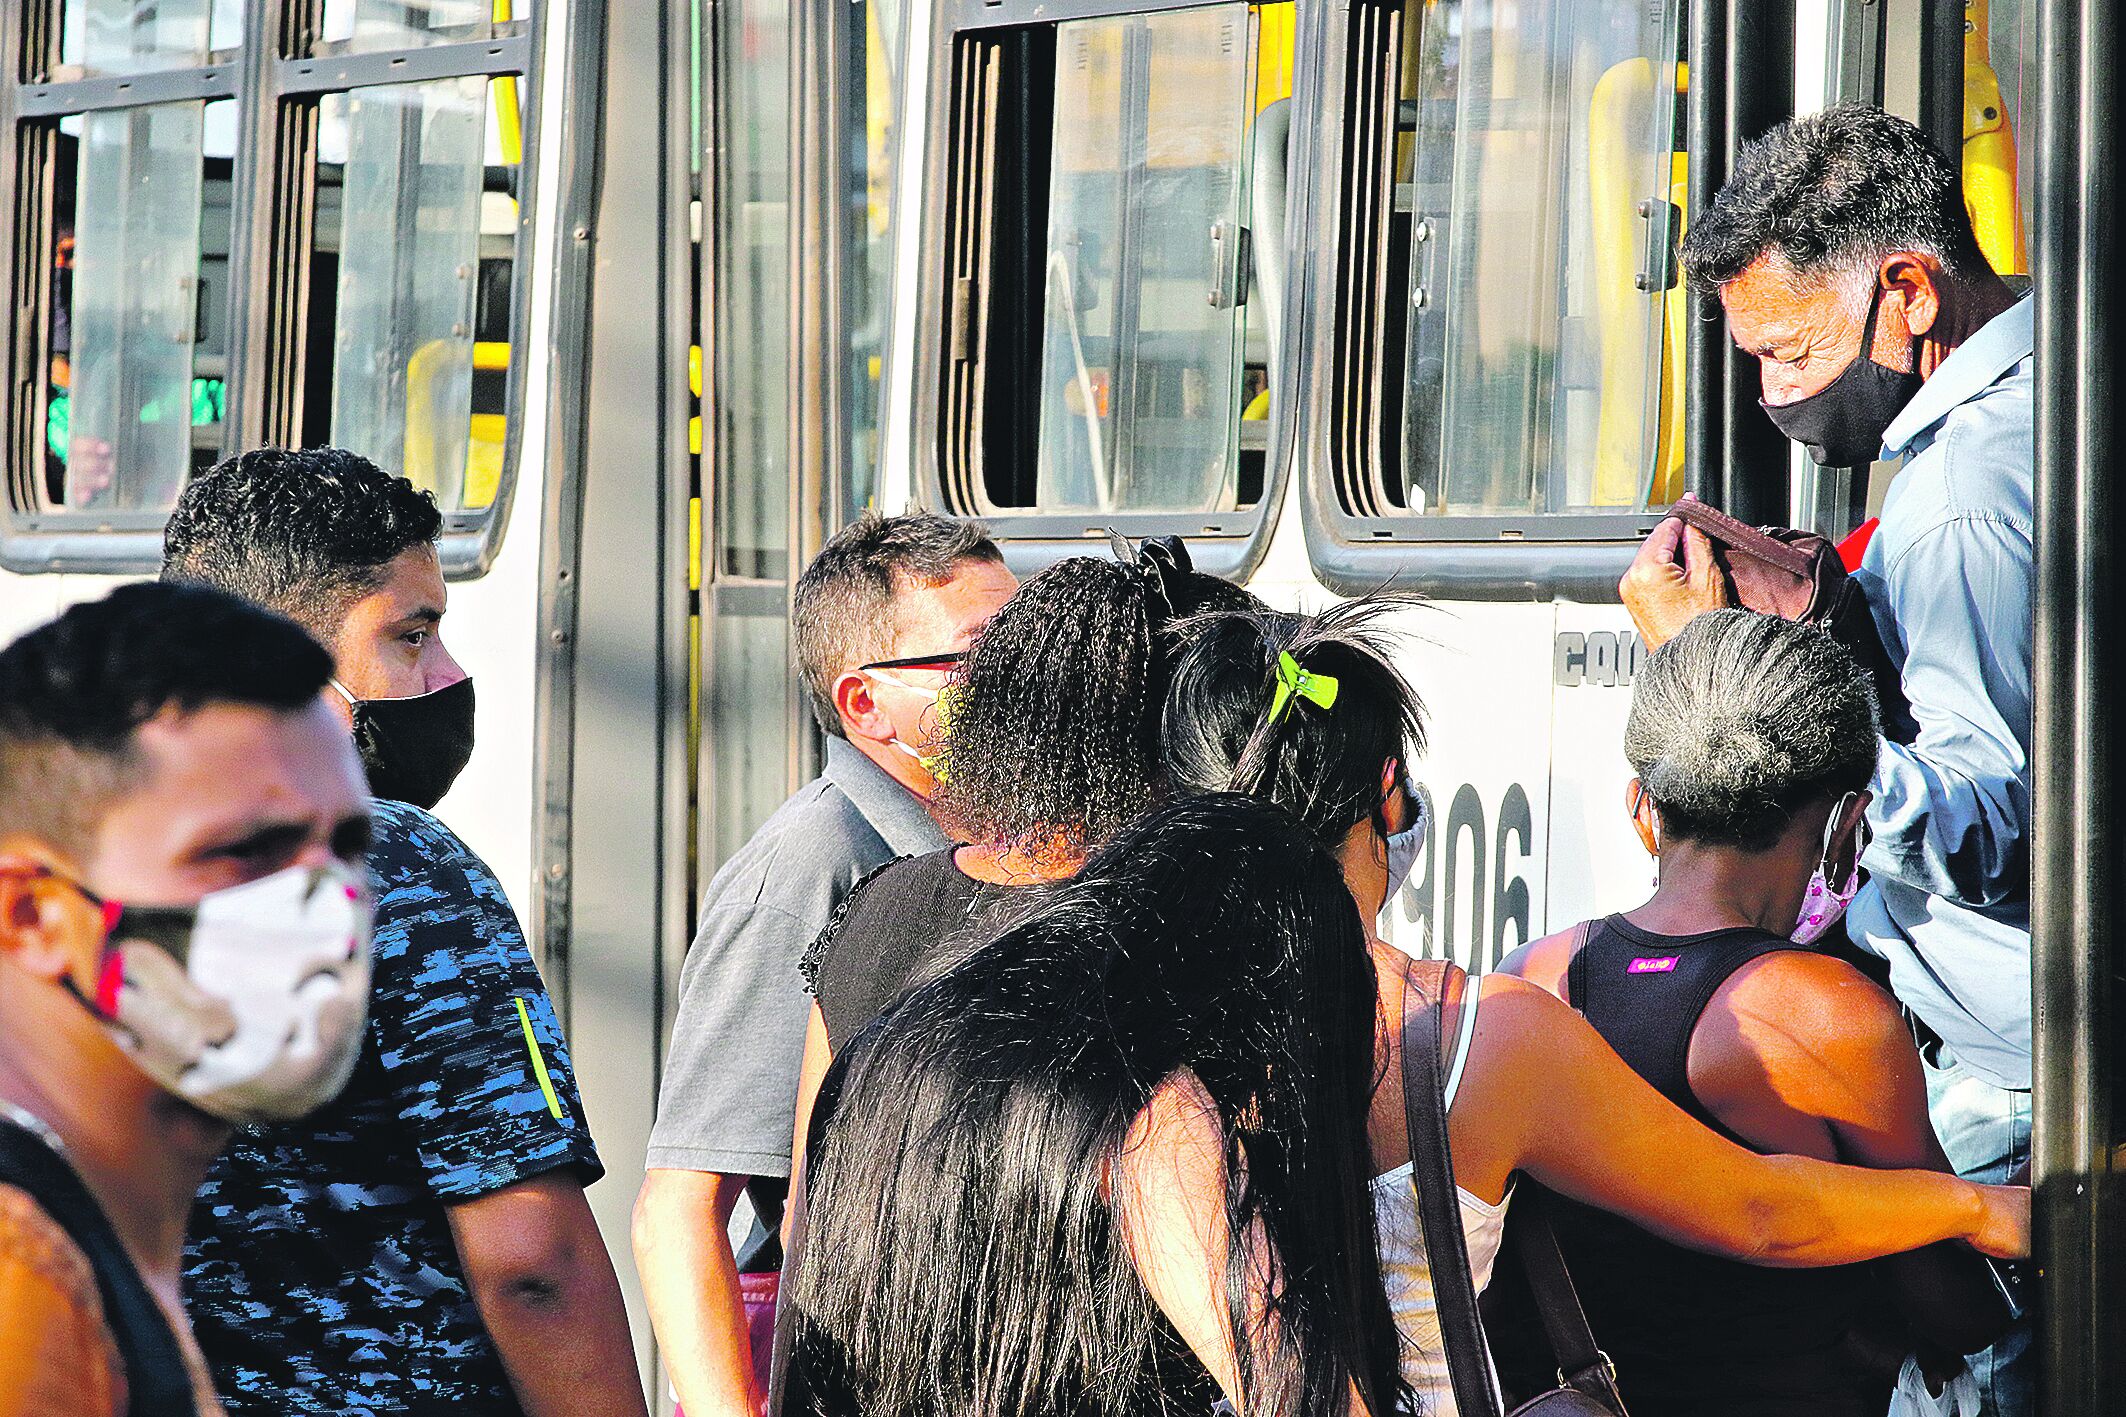 Na tarde de ontem, o DIÁRIO flagrou várias situações onde passageiros e motoristas ignoravam as medidas de proteção contra o coronavírus, além da falta de fiscalização do transporte coletivo na capital

